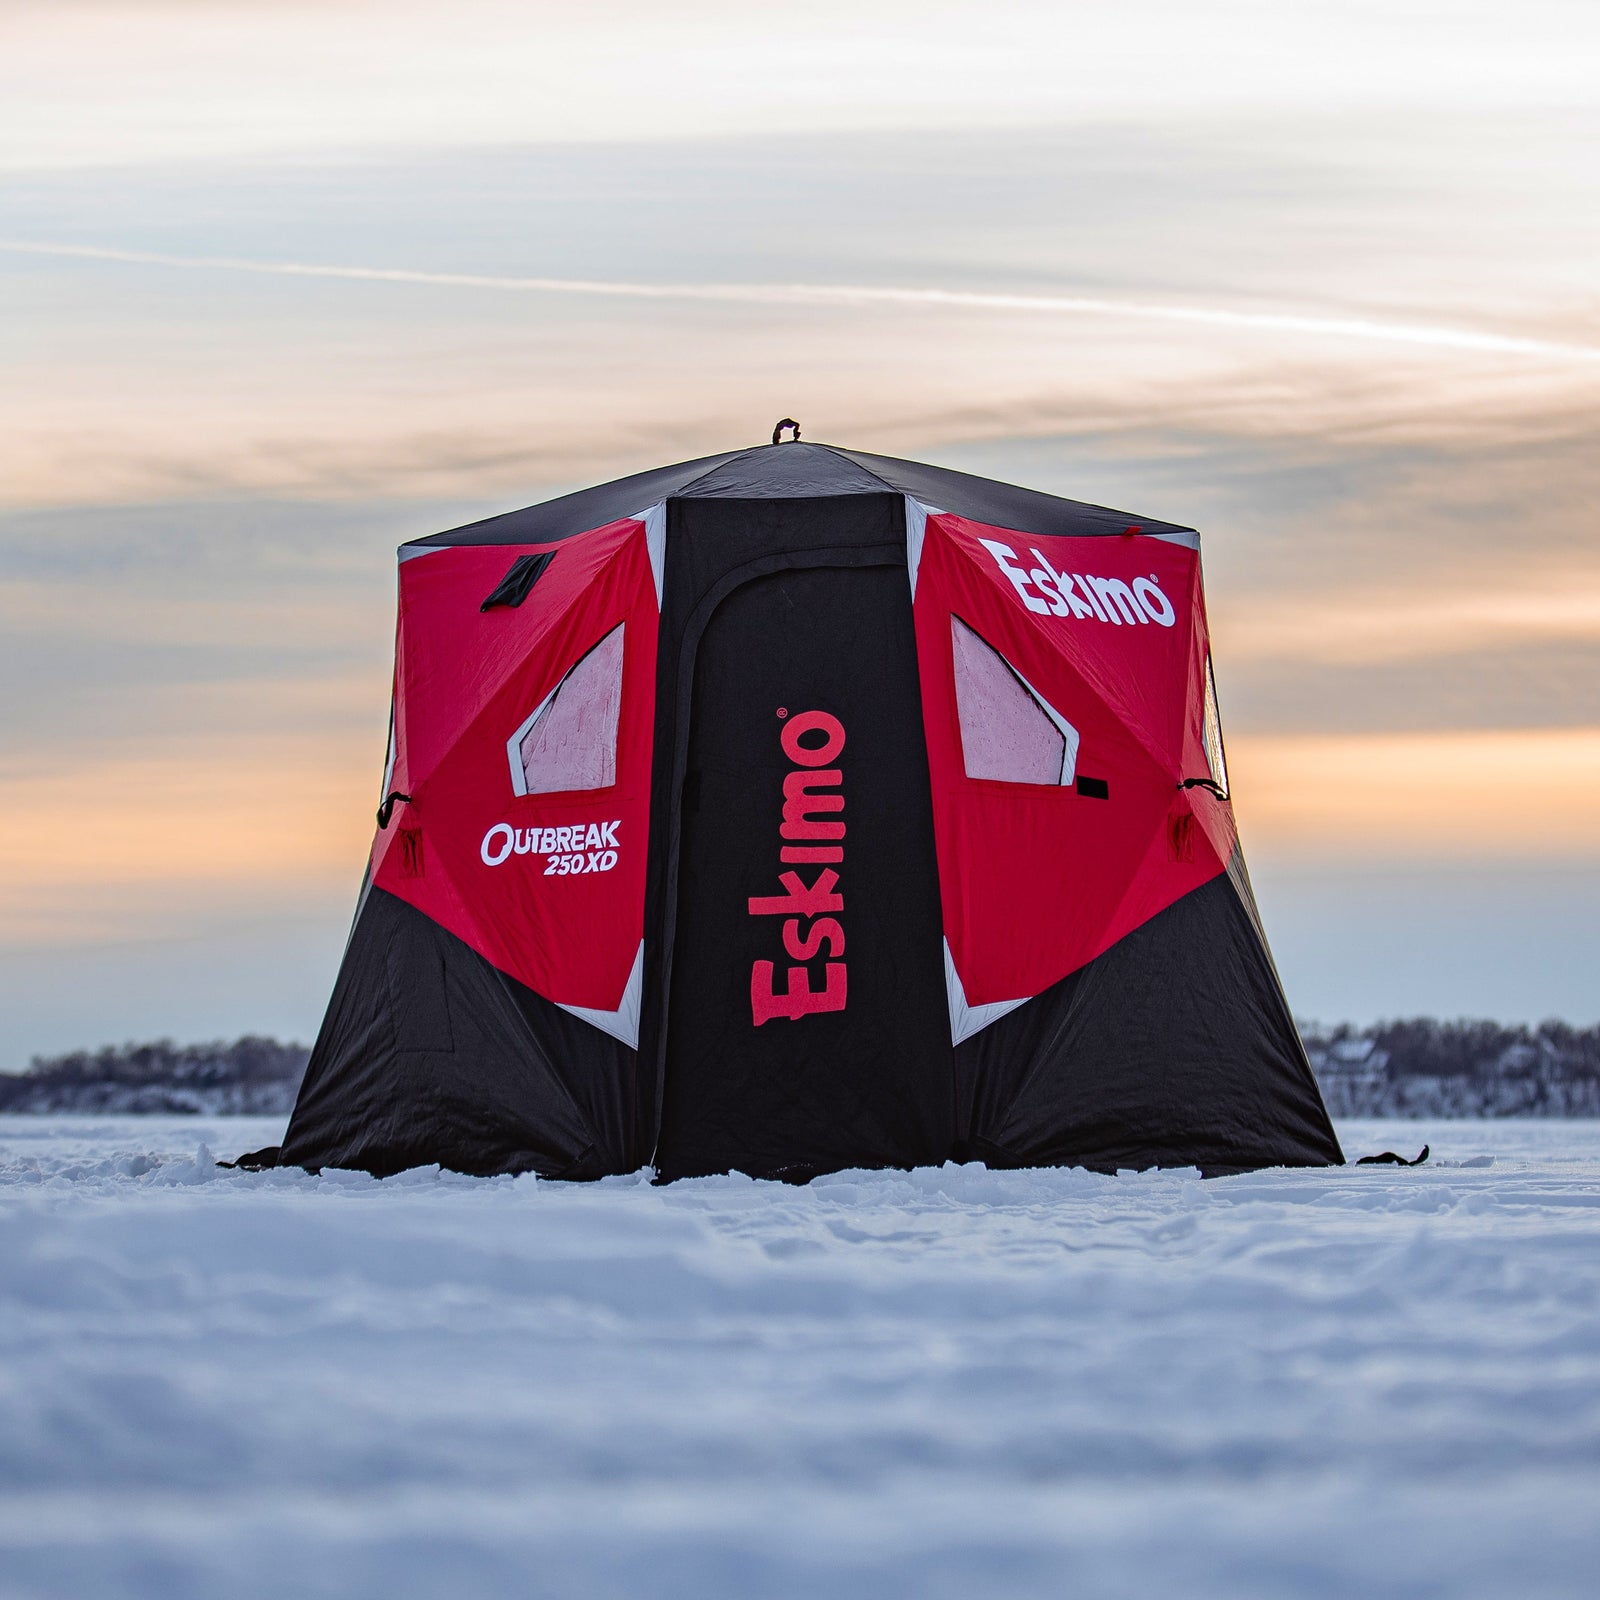 Eskimo Fatfish 949i Insulated Pop-Up Portable Ice Shelter